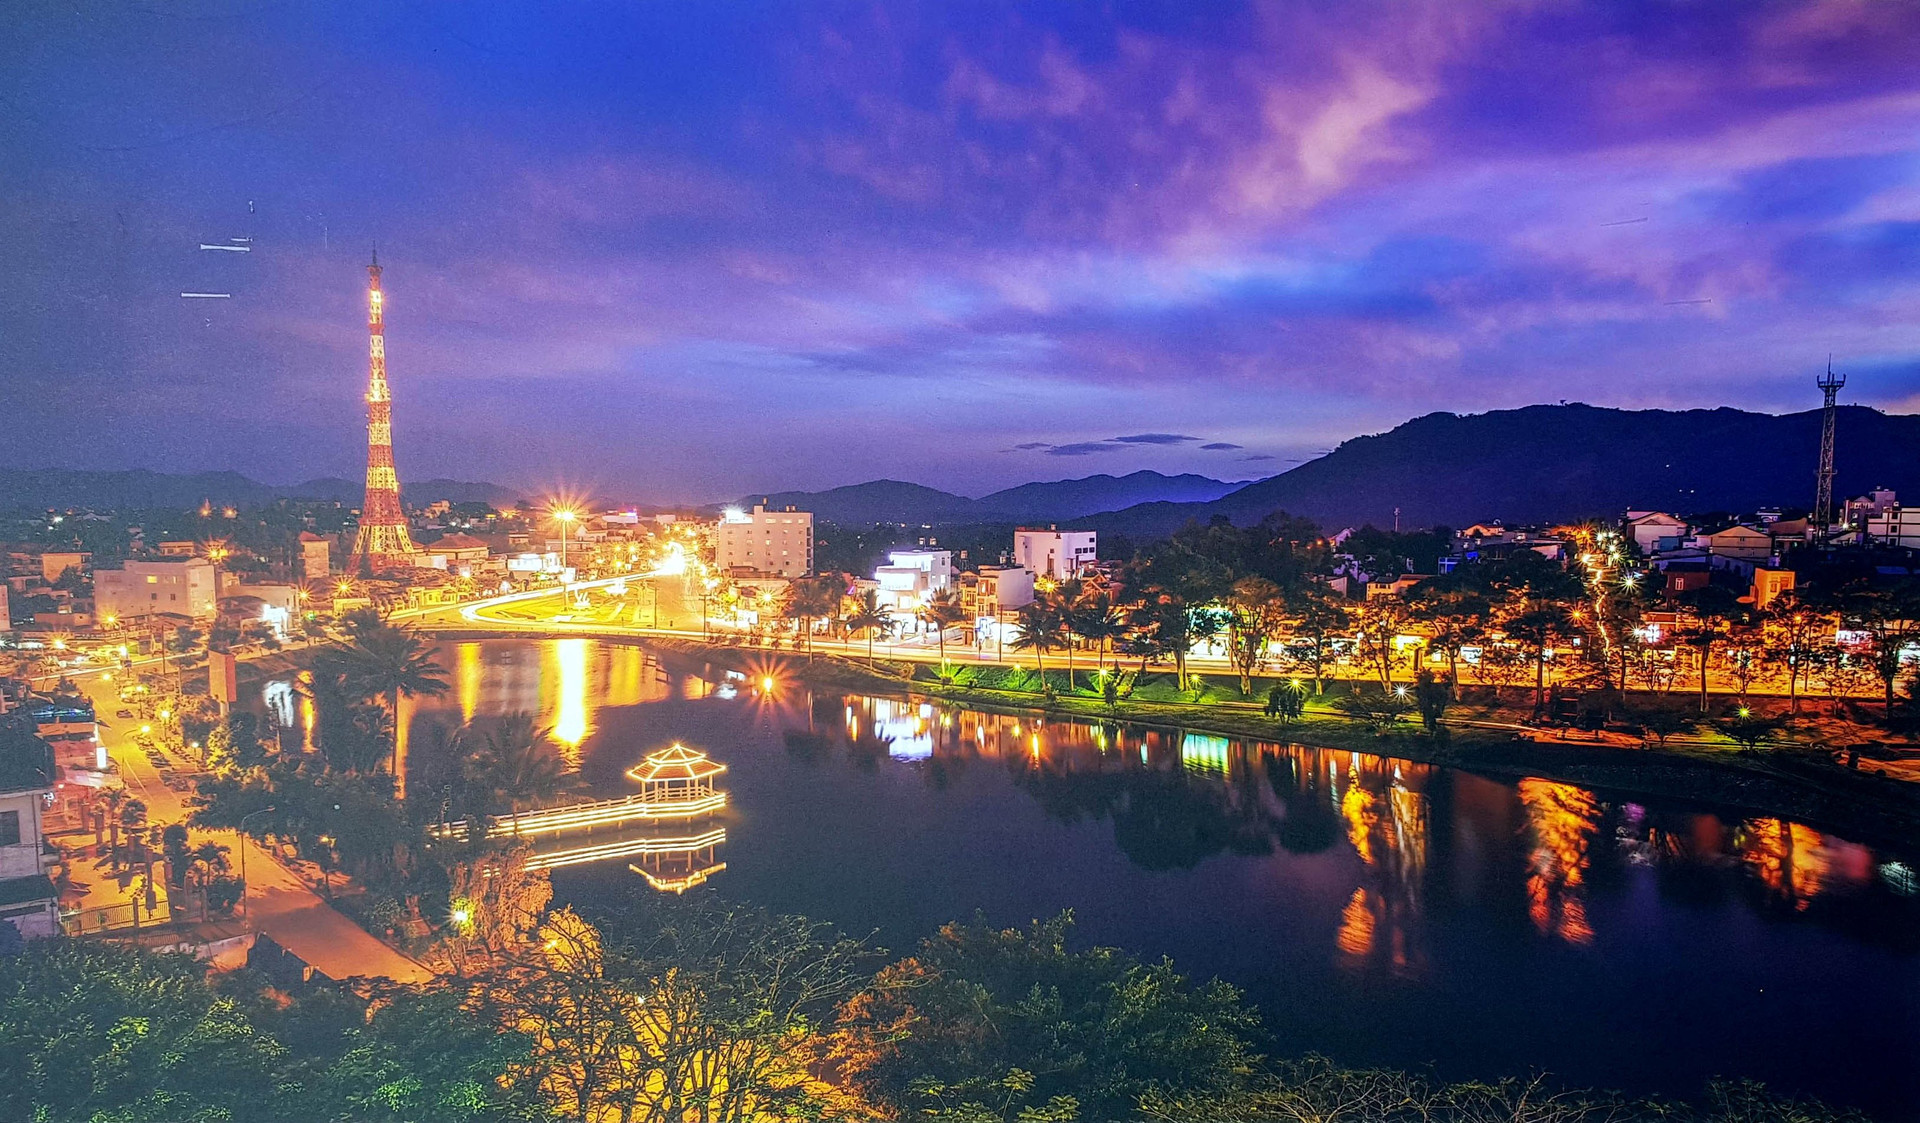 Đến năm 2045, Lâm Đồng trở thành thành phố trực thuộc trung ương gồm 3 quận, 3 thị xã, 3 huyện